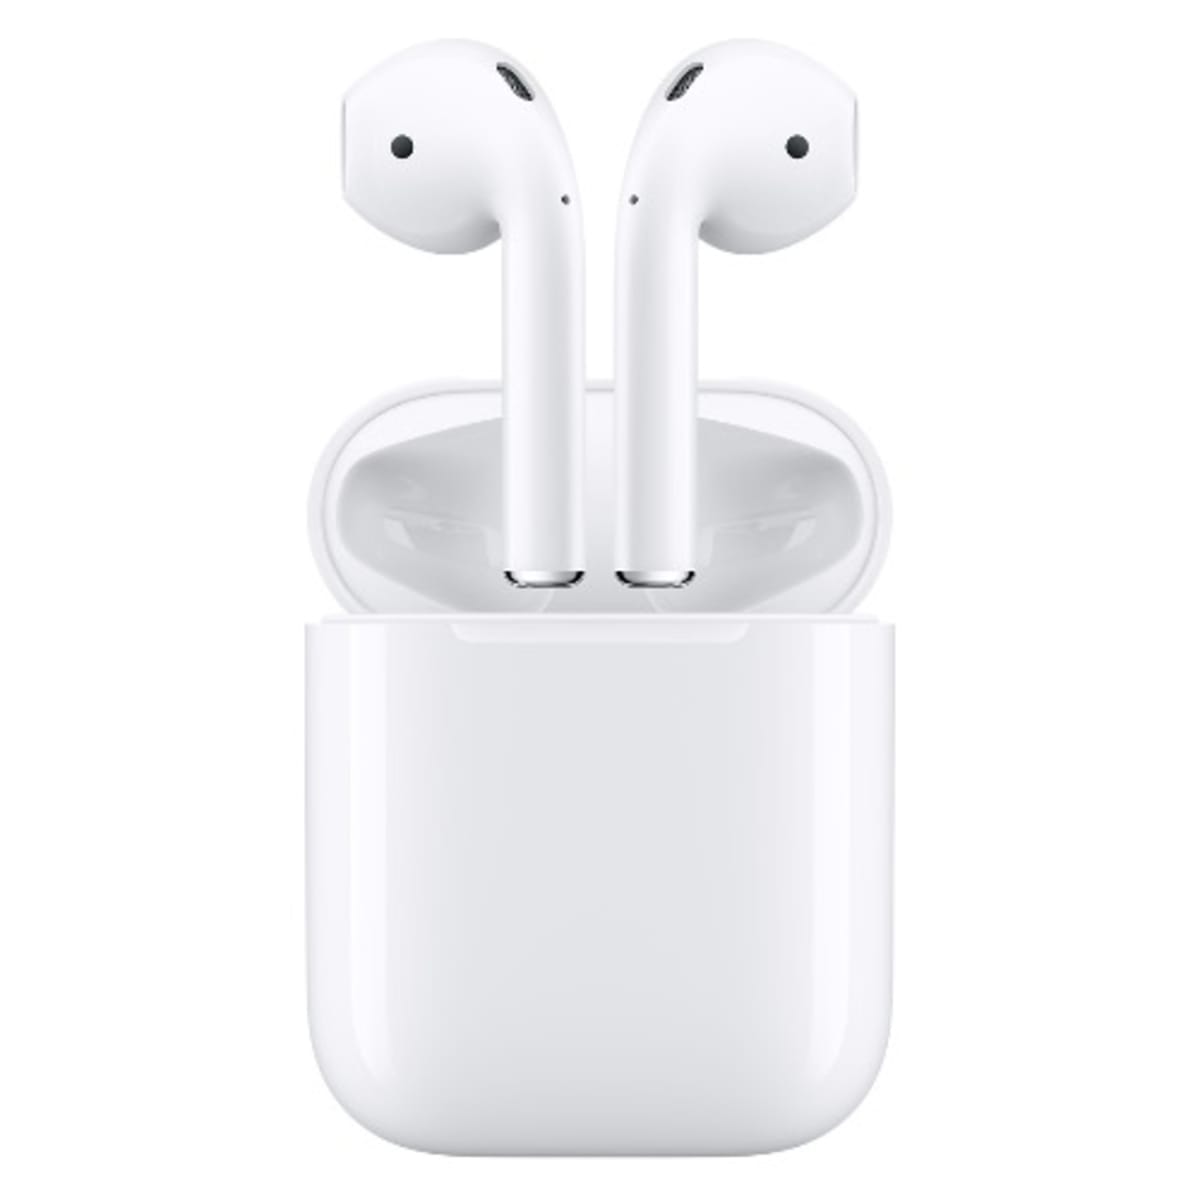 Apple Wireless Earpods